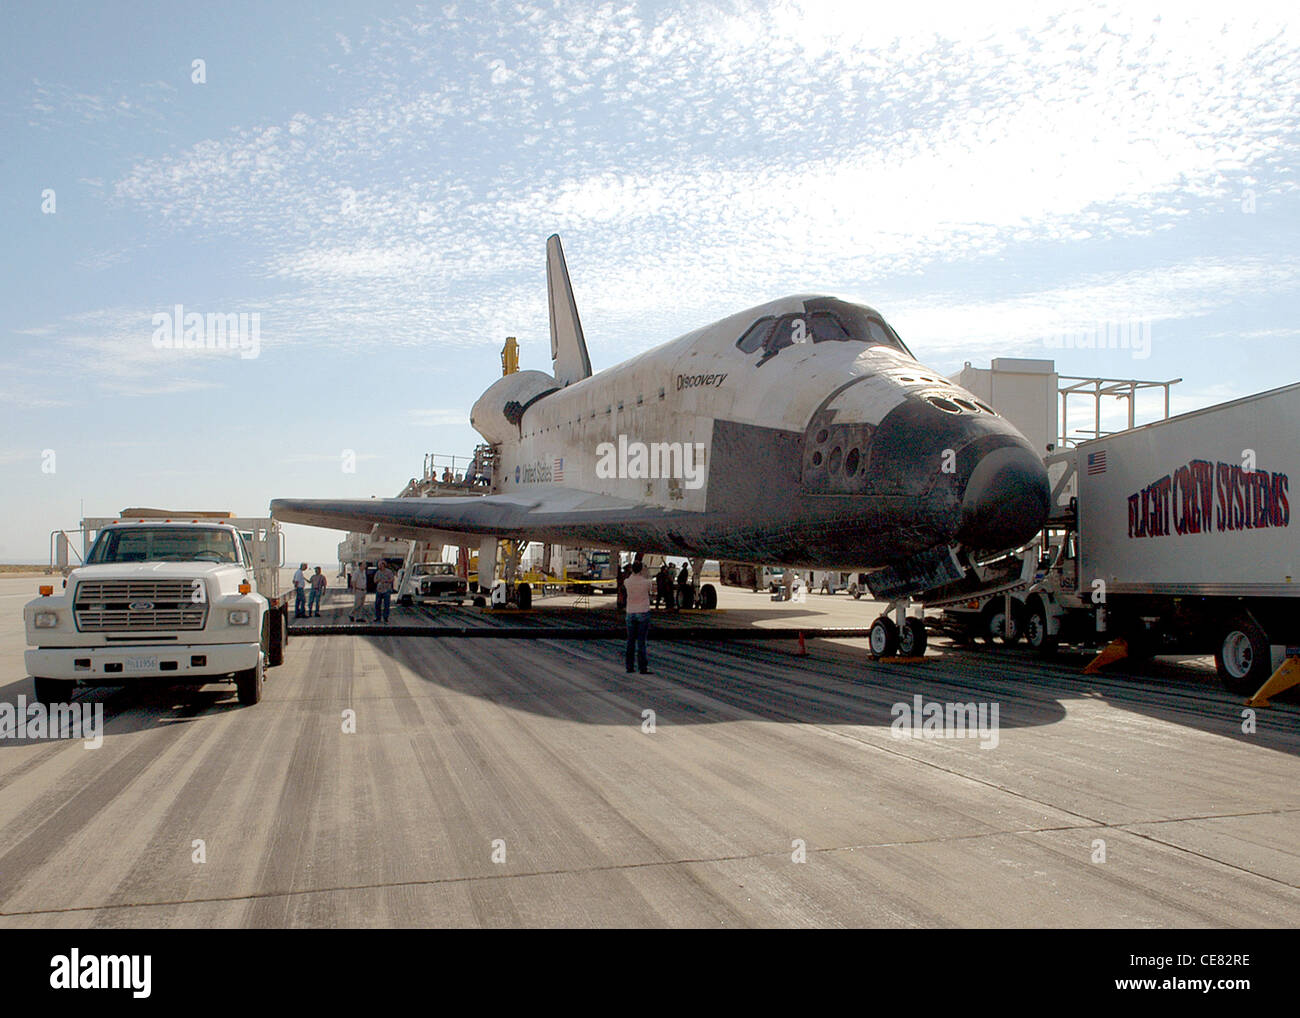 Space Shuttle Discovery sitzt hier am Ende der Start- und Landebahn nach ihrer sicheren Landung am 9. August. Das Shuttle kehrte von einer 14-tägigen Mission im All zurück Stockfoto